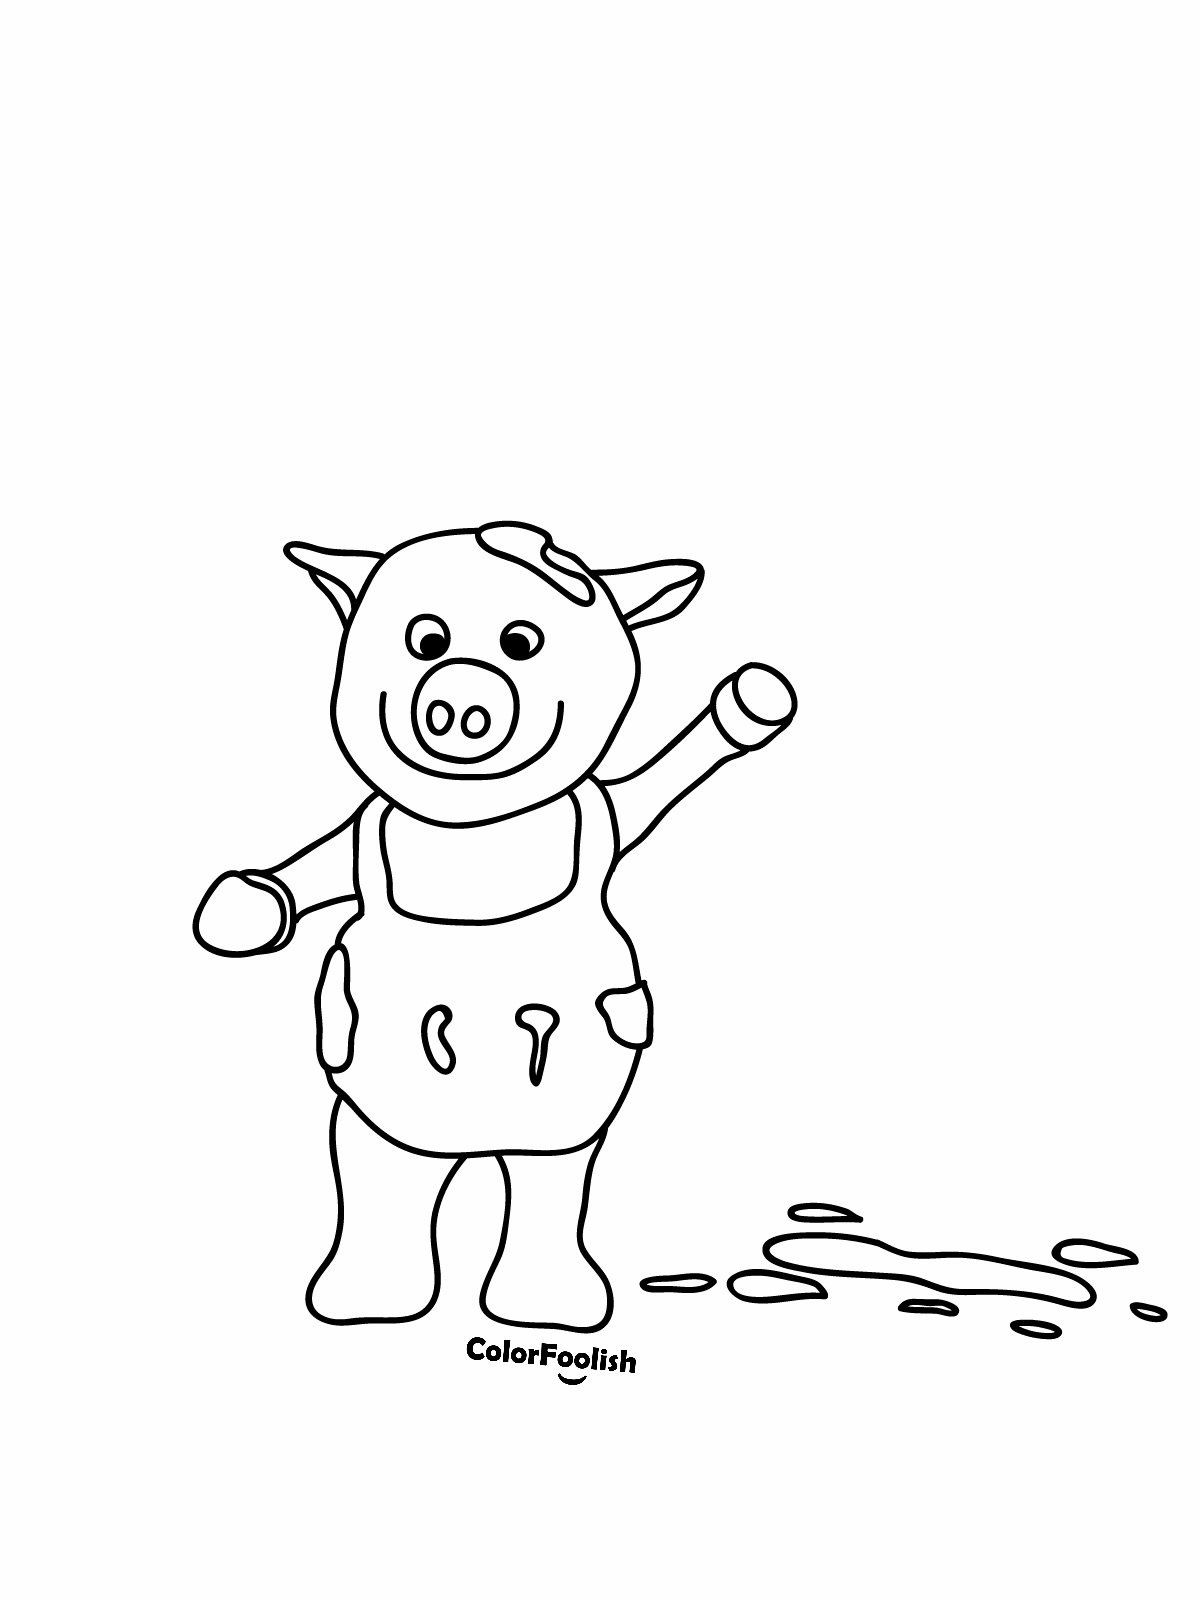 Målarbild av en gris som vinkar mot oss